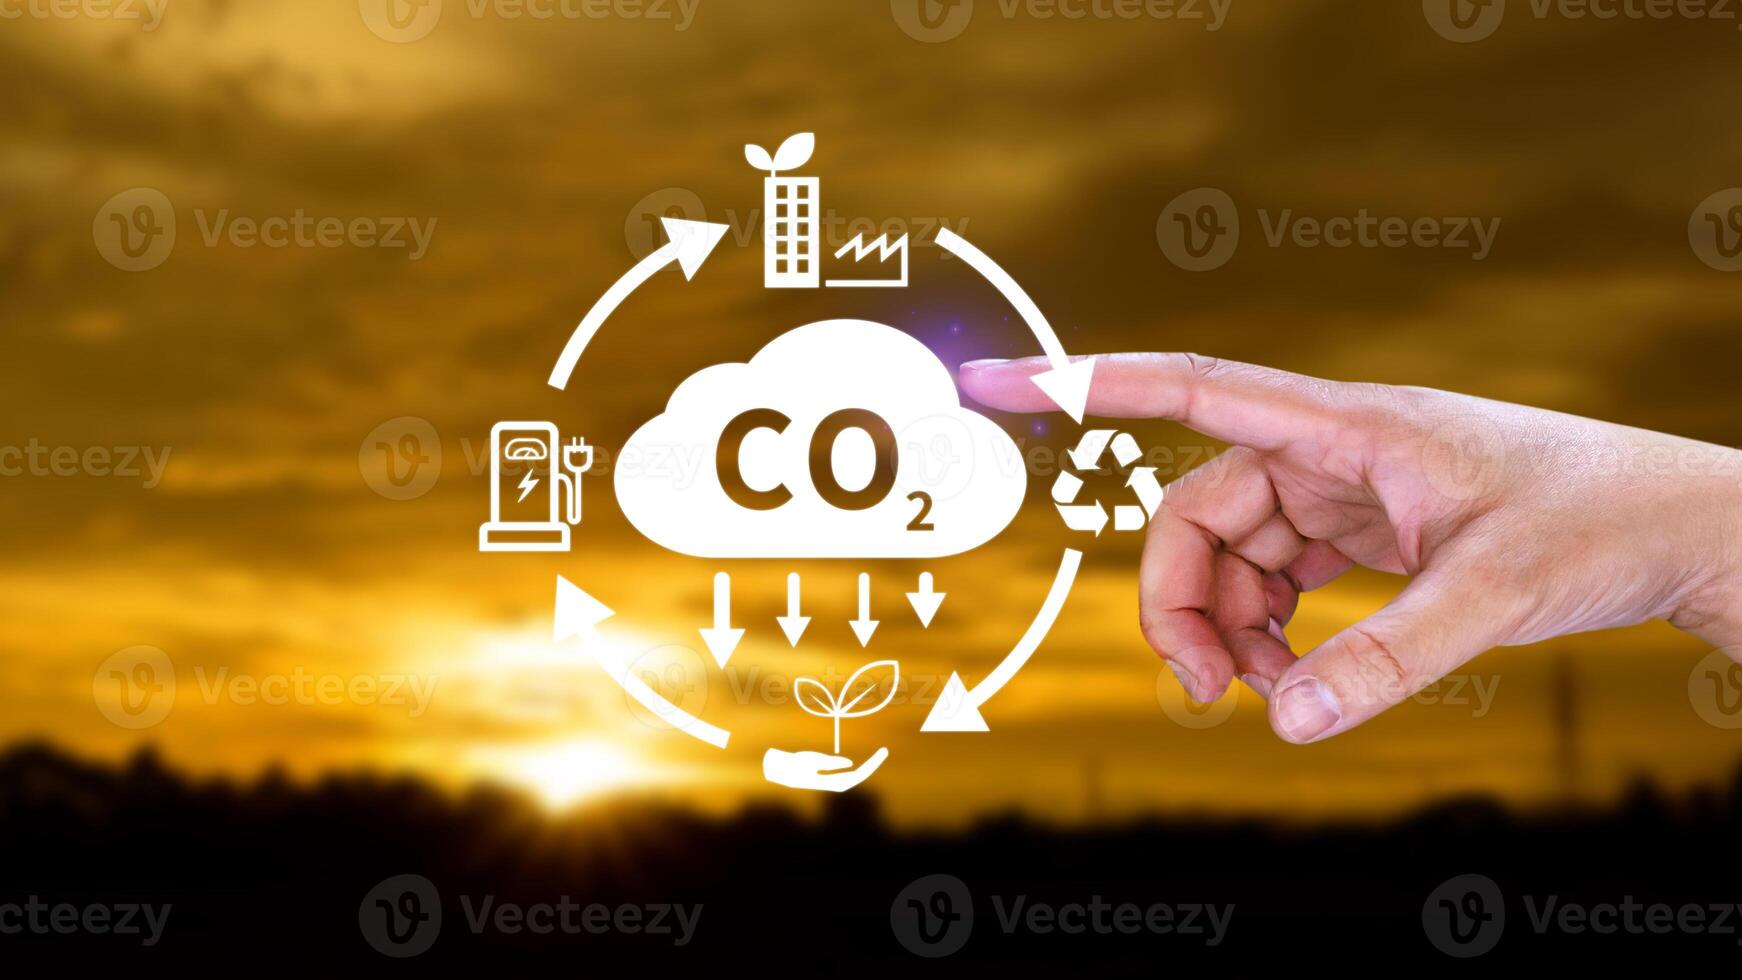 mano participación co2 reduciendo virtual icono para disminución carbón dióxido emisión, carbón huella y carbón crédito a límite global calentamiento desde bio clima cambio concepto. foto